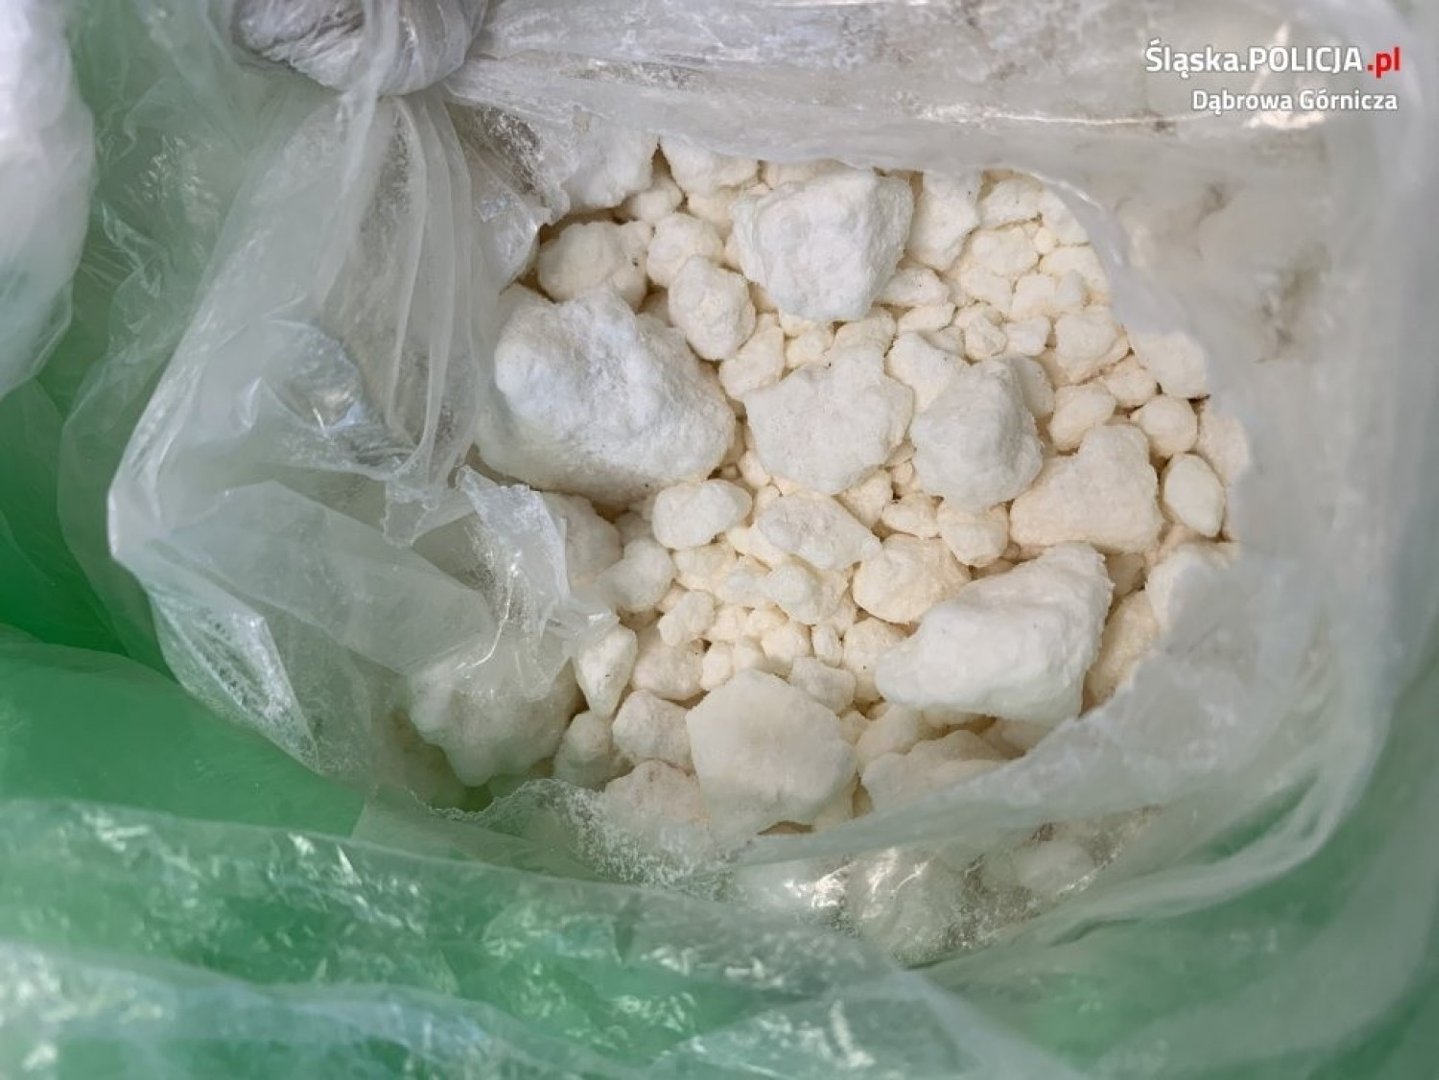 Dąbrowa Górnicza: policjanci znaleźli ponad 1 kg amfetaminy. Zatrzymali  33-letniego mężczyznę | Dąbrowa Górnicza Nasze Miasto